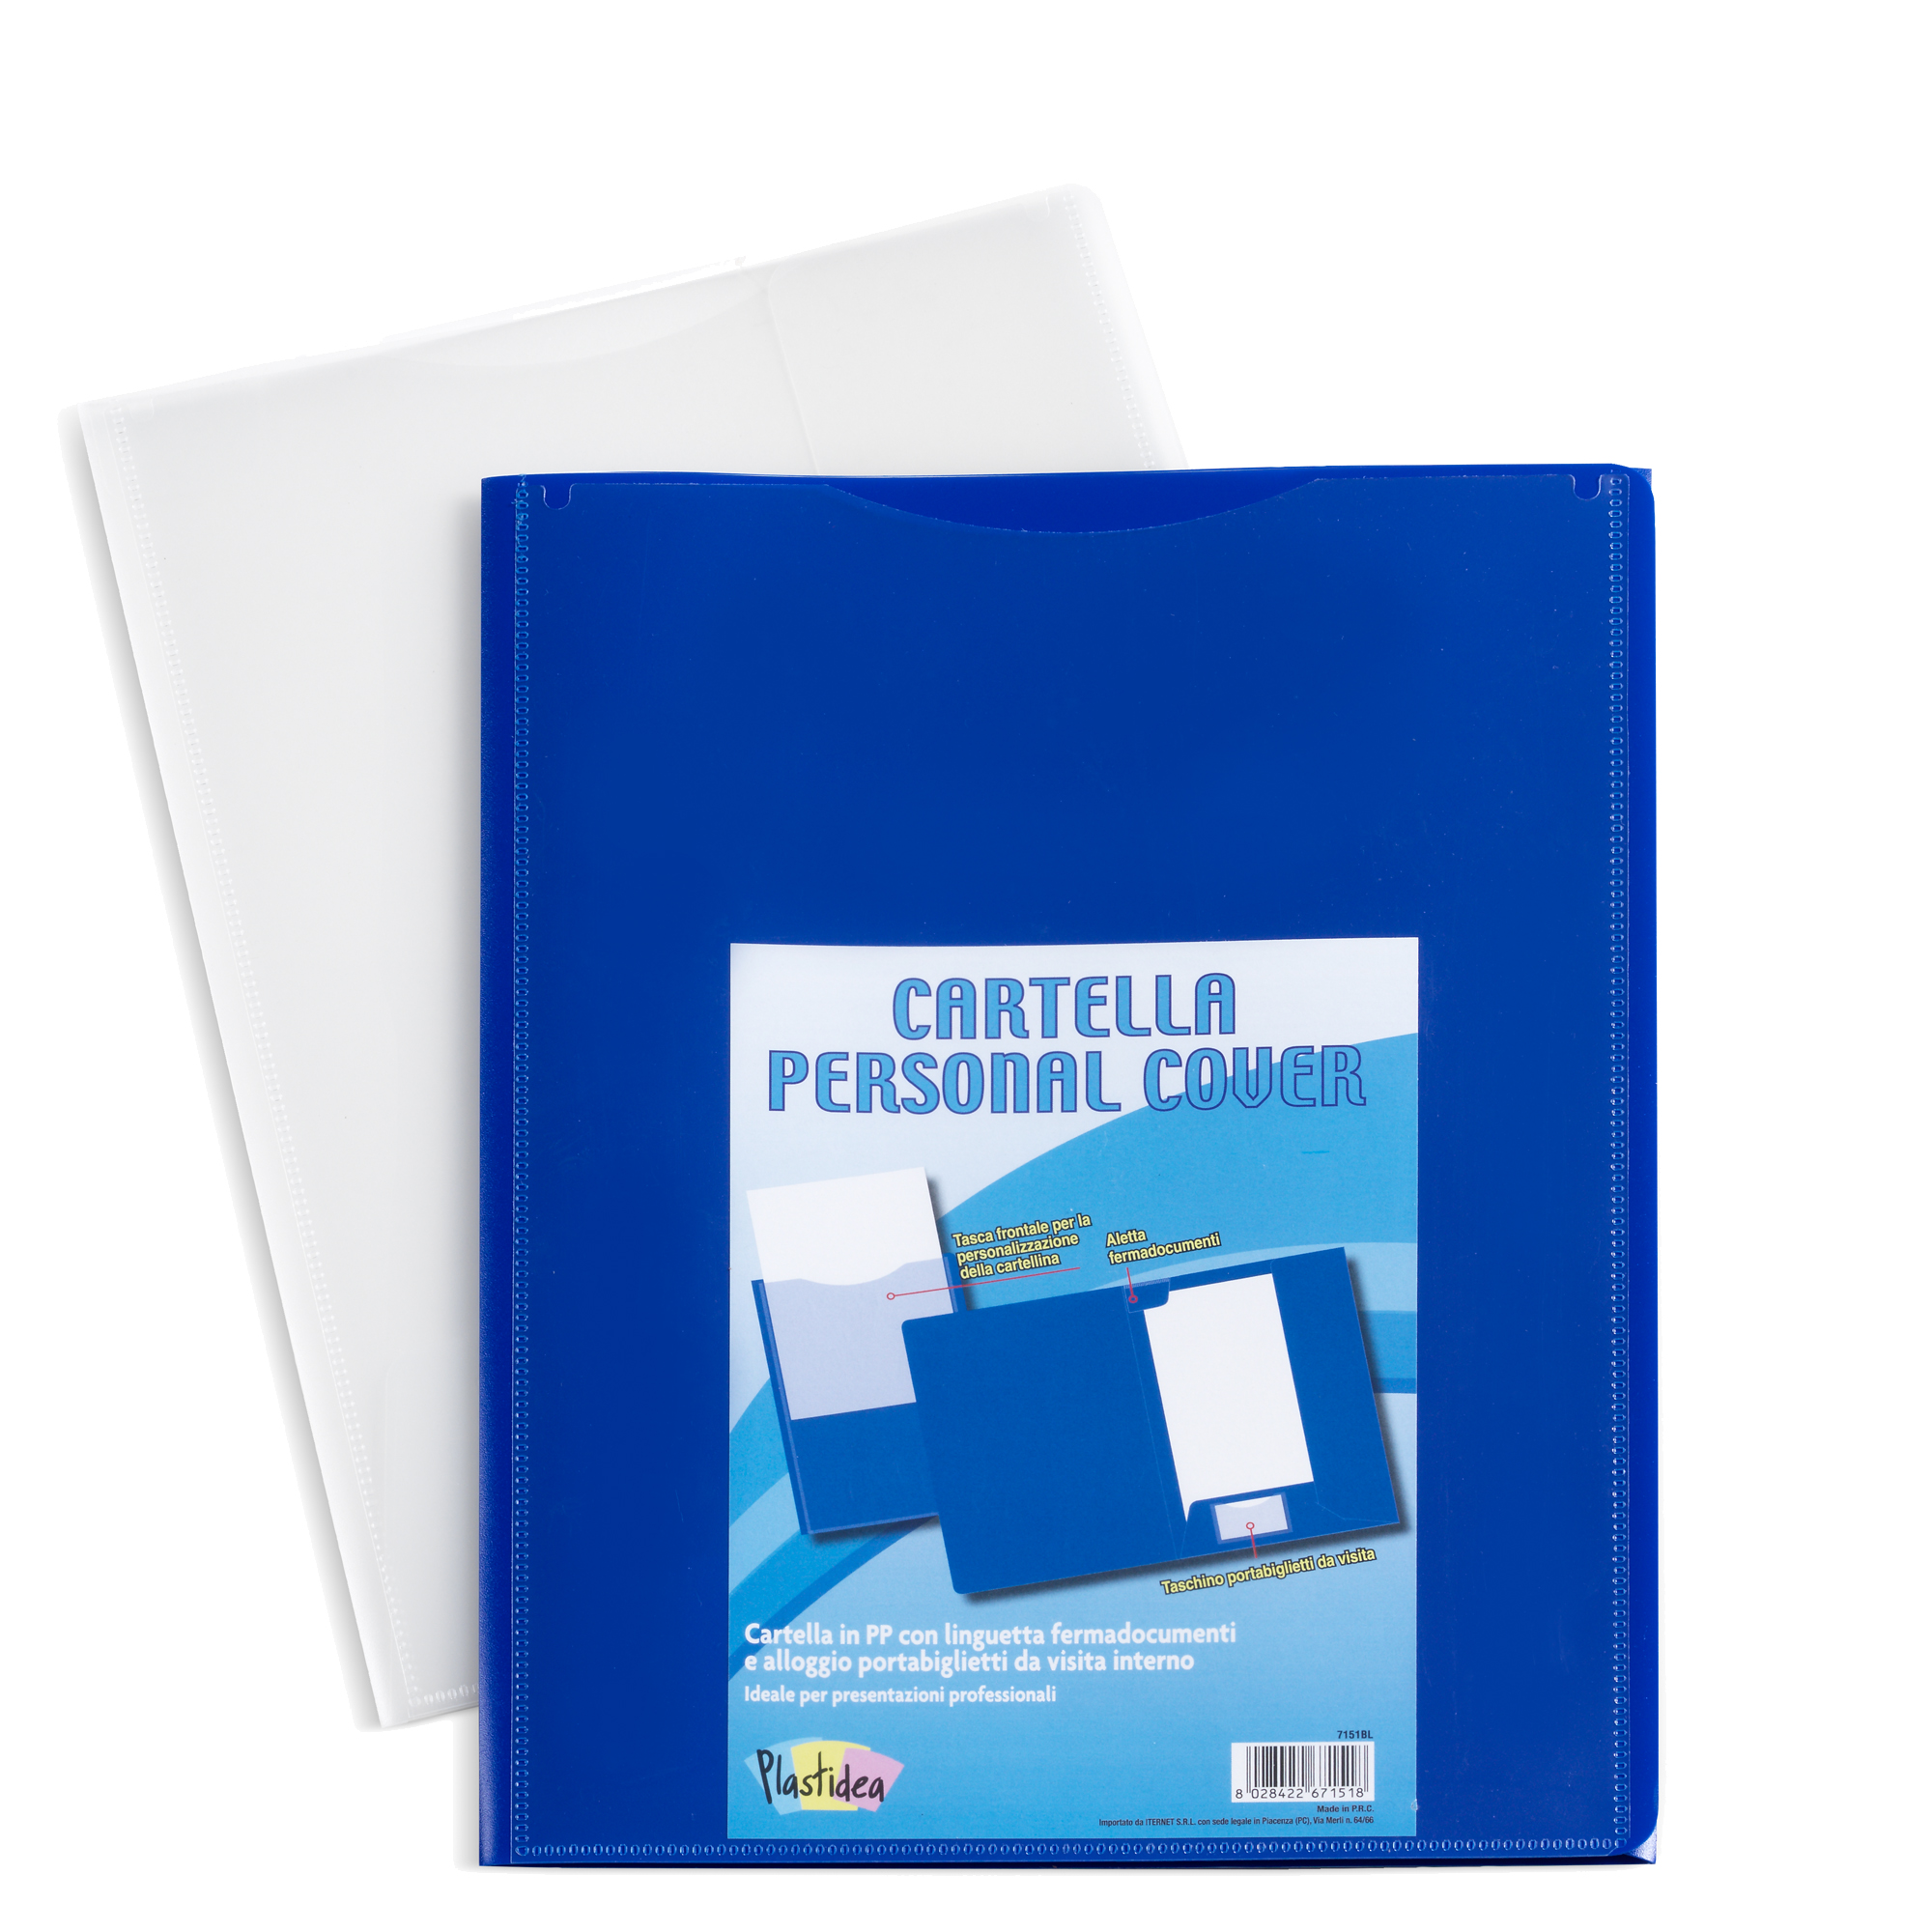 Cartella in PP Personal Cover - blu - 24 x 32 cm - Iternet - conf. 5 pezzi  su